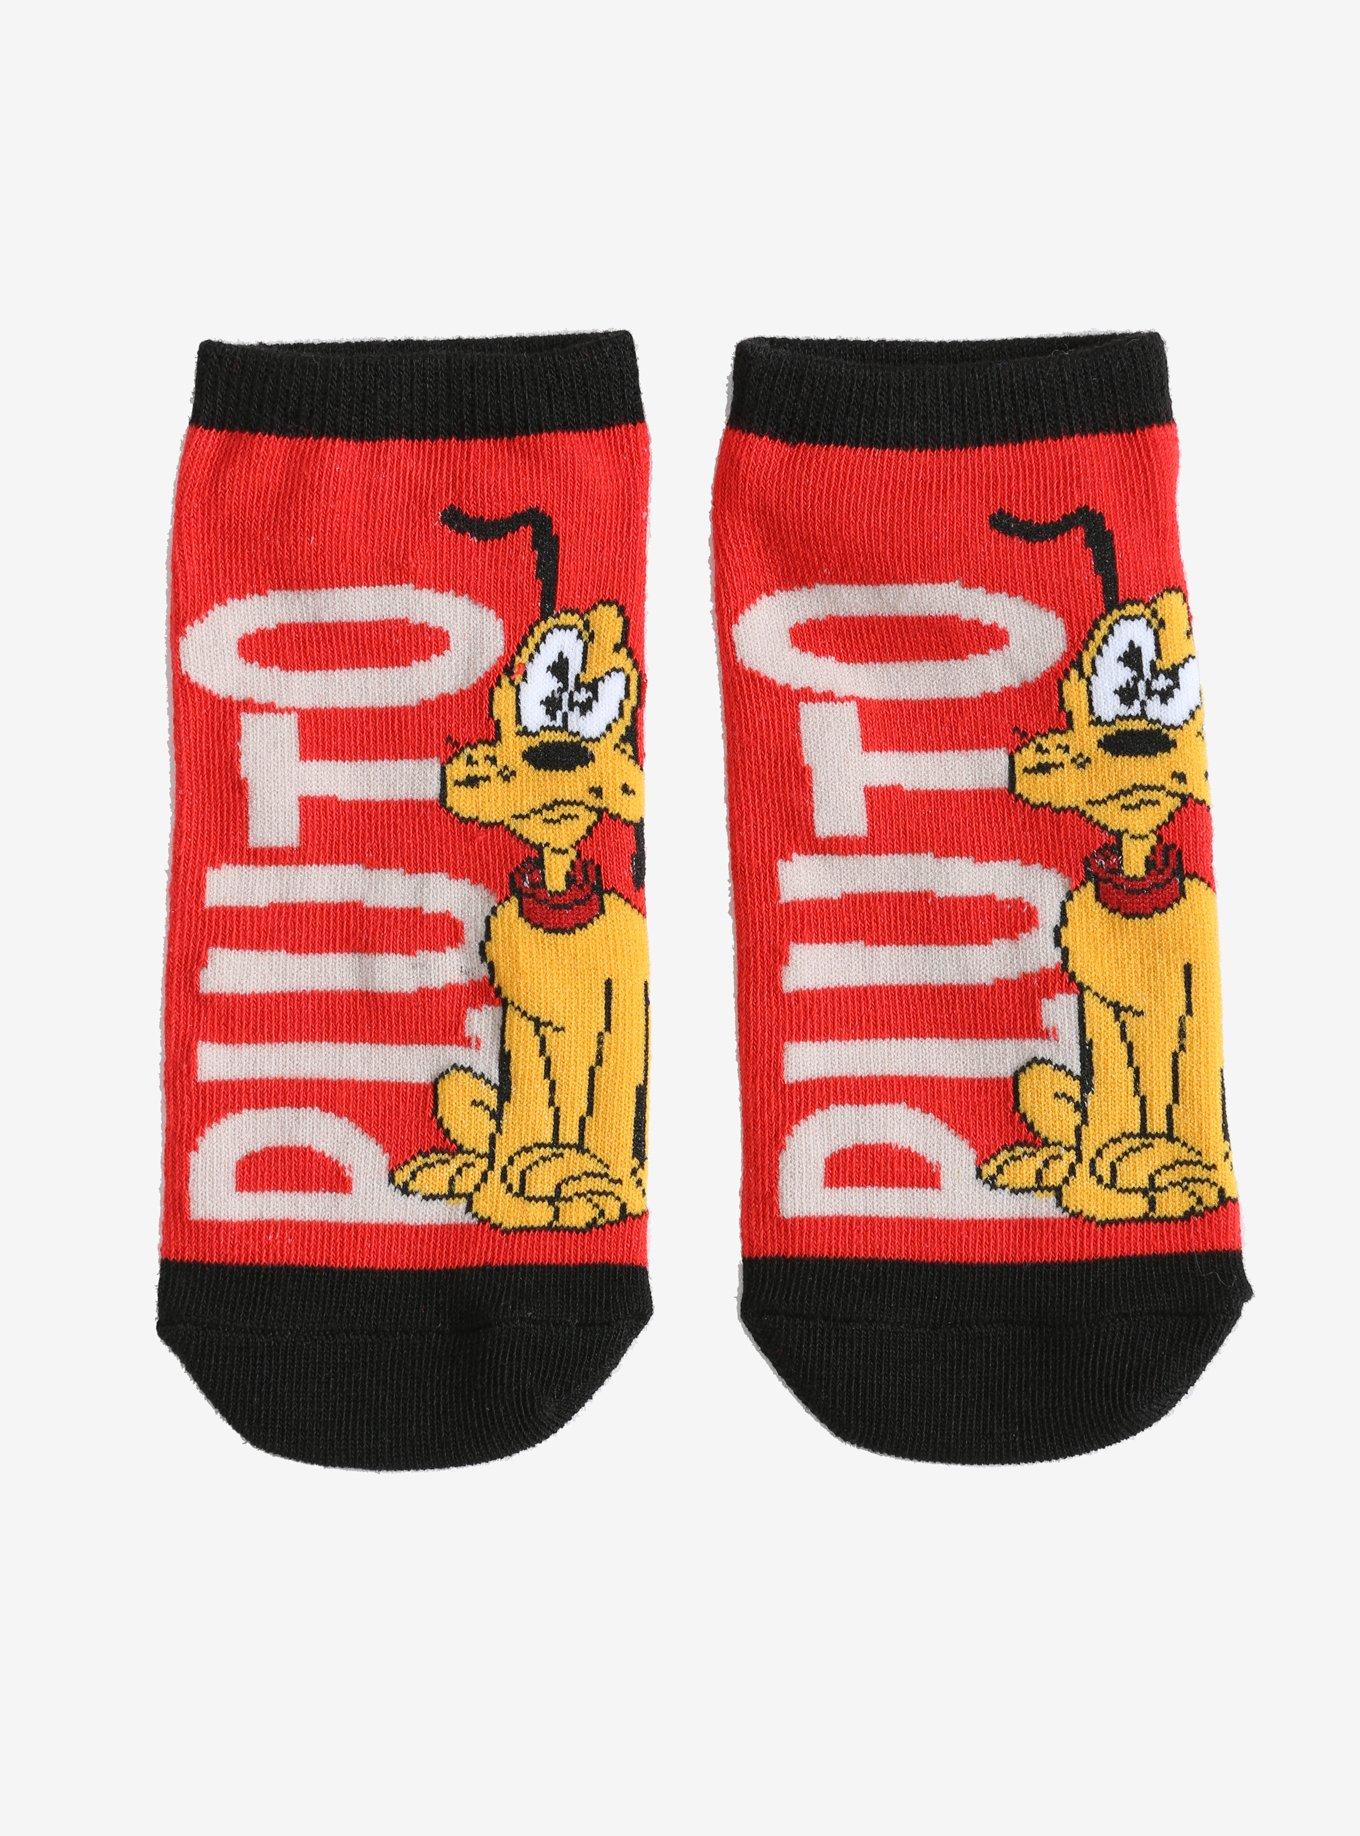 Disney Pluto Red No-Show Socks, , hi-res